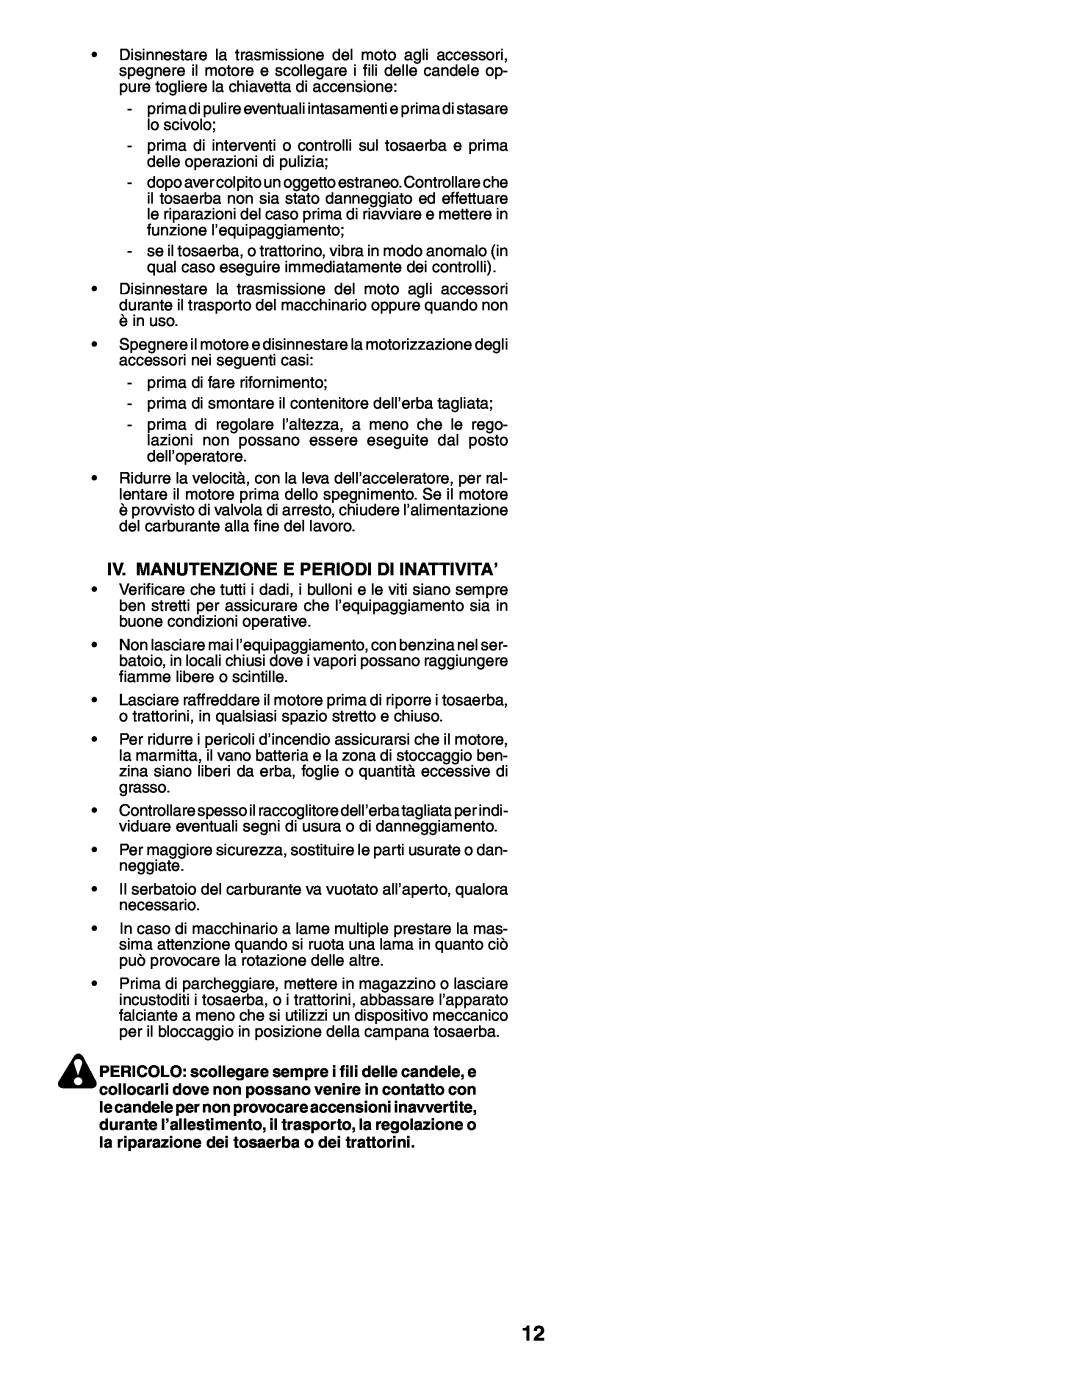 Husqvarna YTH210XP instruction manual Iv. Manutenzione E Periodi Di Inattivita’ 